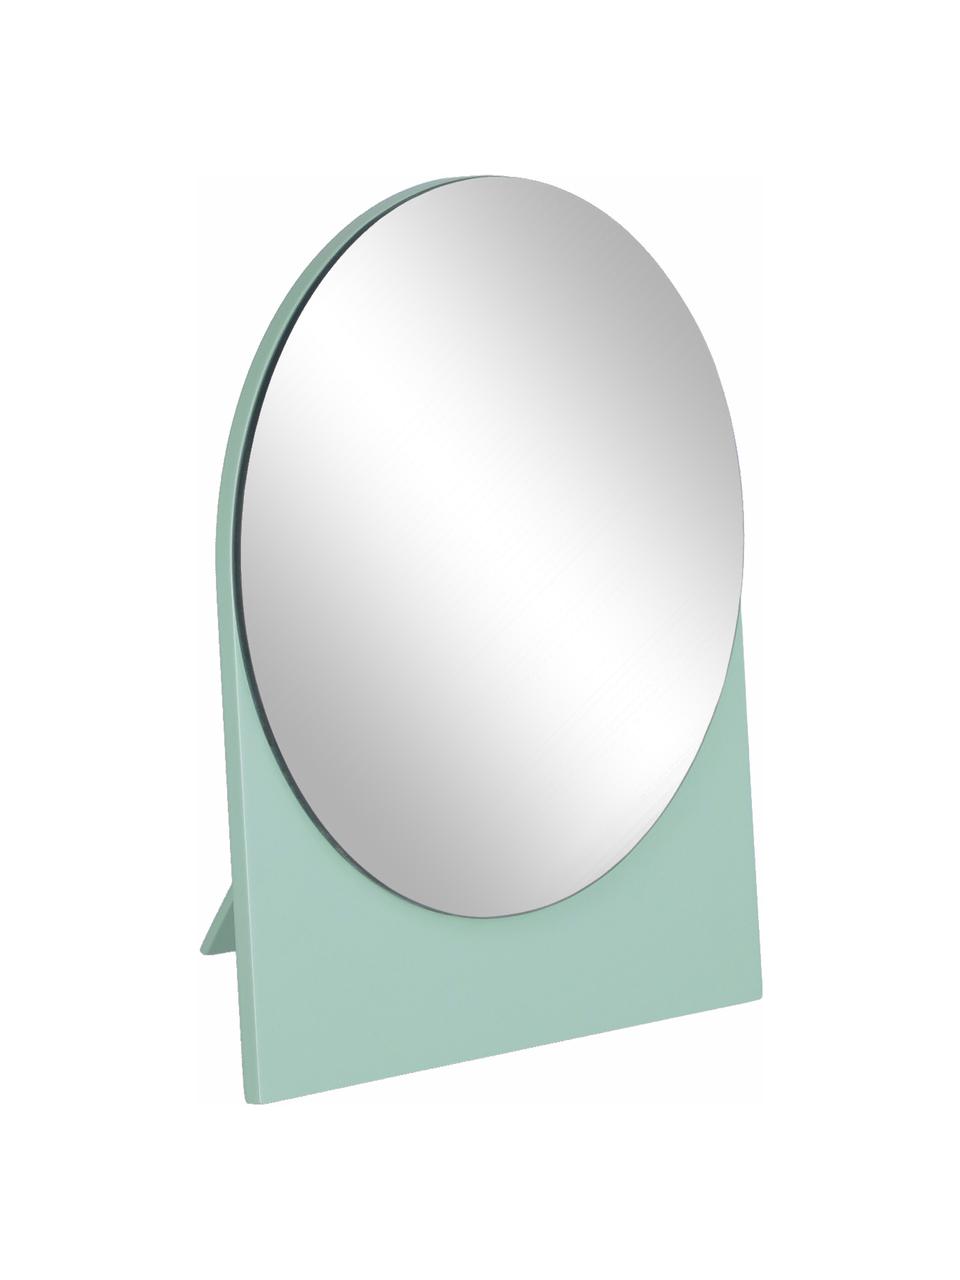 Specchio cosmetico rotondo con cornice in legno Mica, Superficie dello specchio: lastra di vetro, Verde, Larg. 17 x Alt. 20 cm